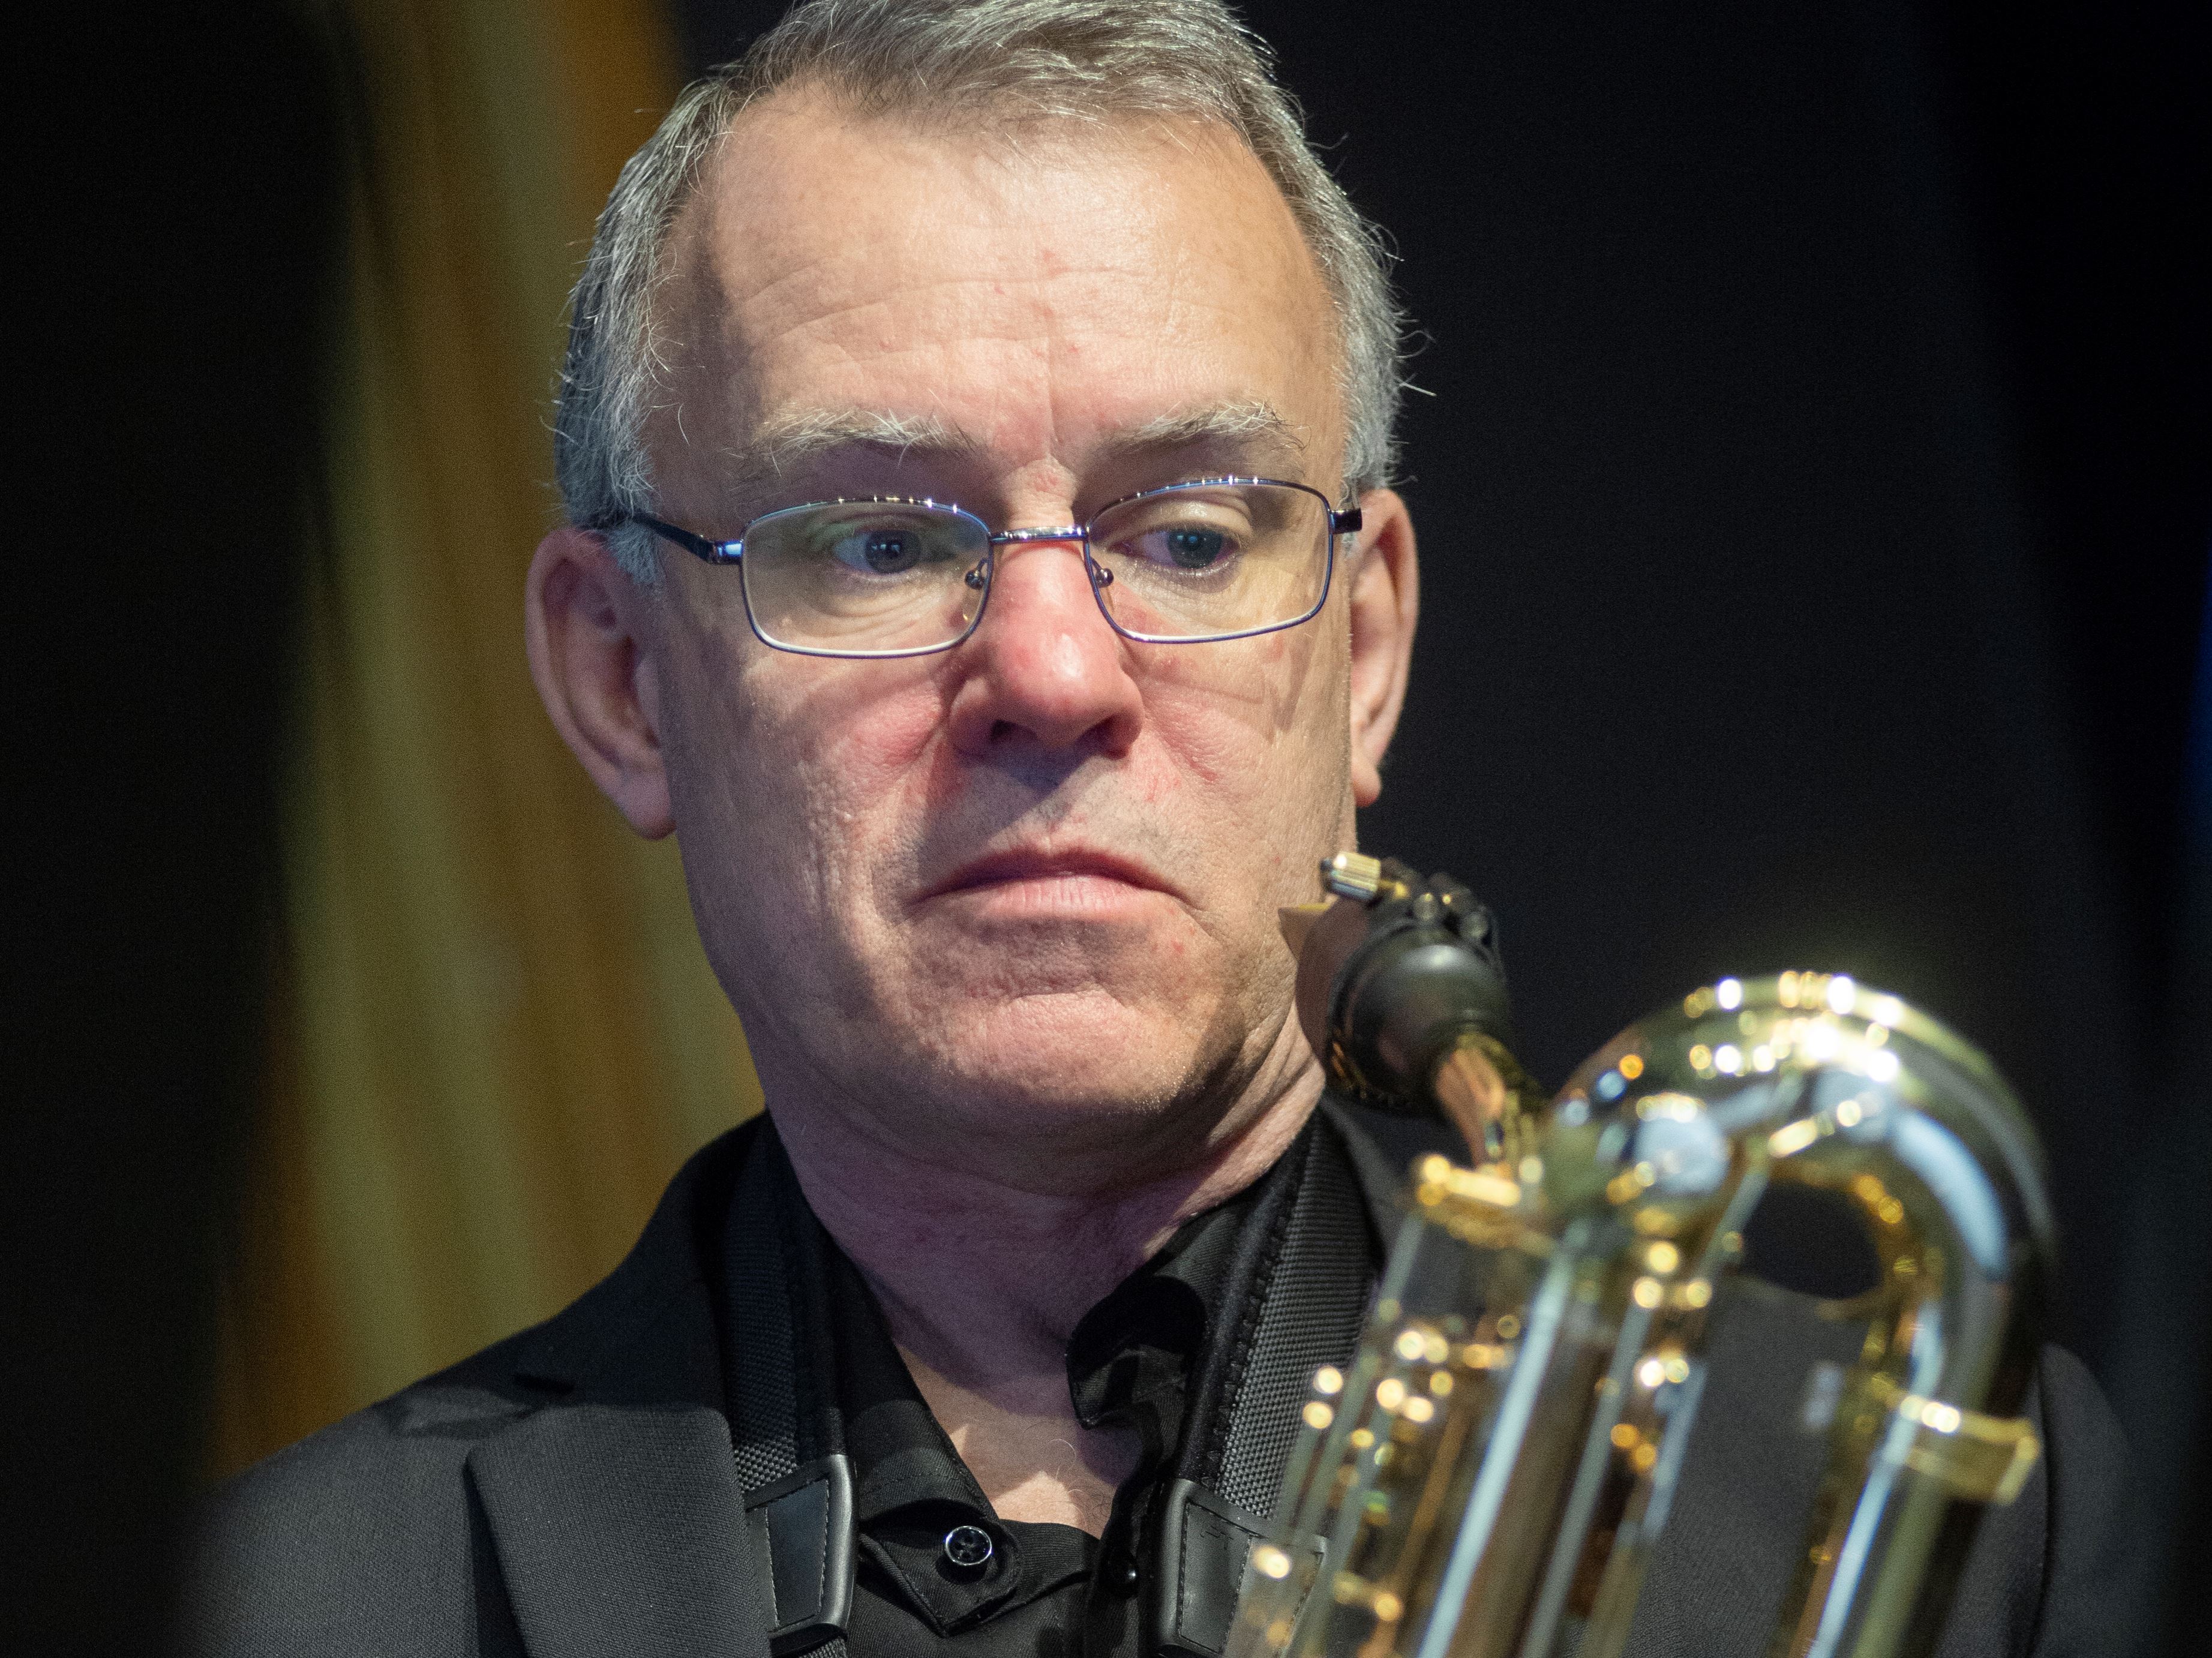 Närbild av saxofonisten Per Moberg när han spelar saxofon.